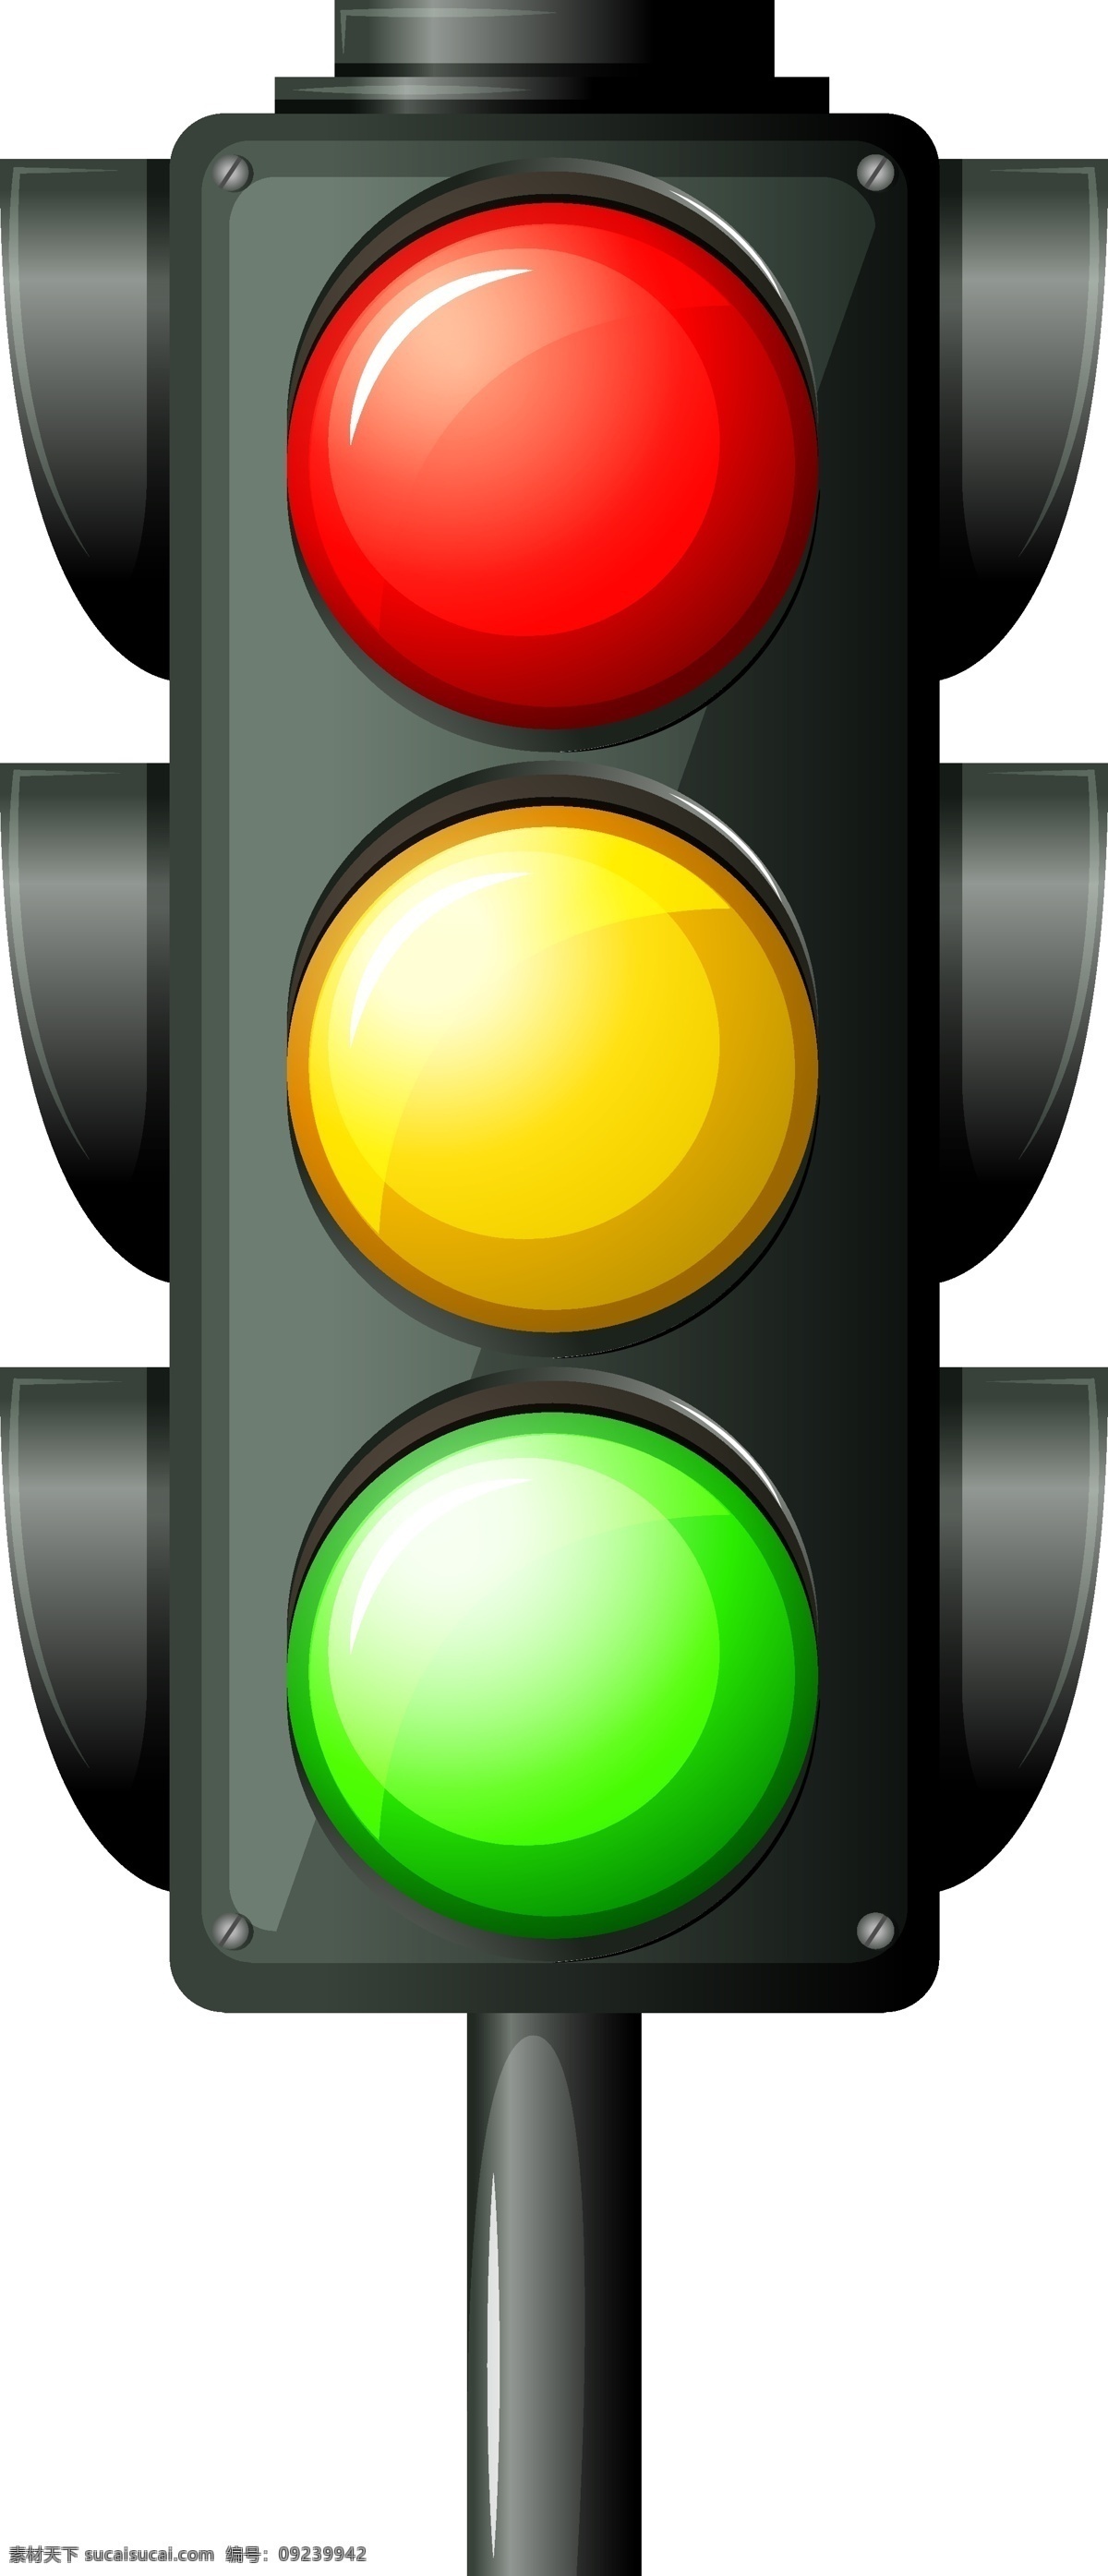 质感 红绿灯 矢量 模板下载 红绿灯图标 红灯 绿灯 黄灯 马路灯 交通灯 生活百科 矢量素材 白色